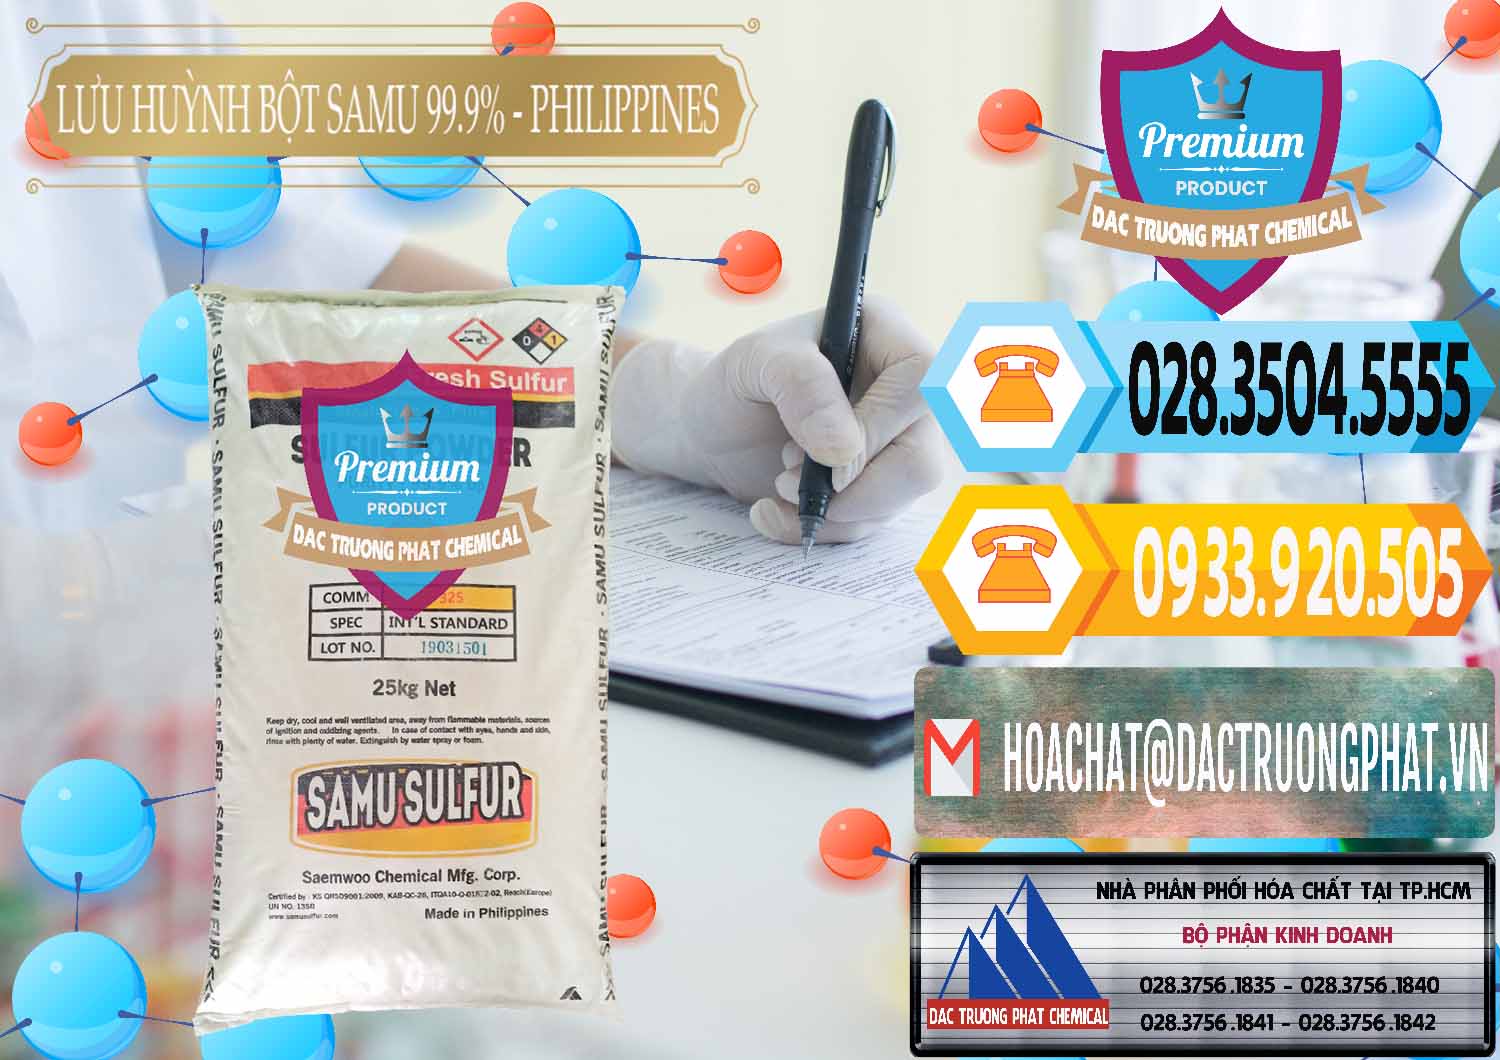 Cty kinh doanh - bán Lưu huỳnh Bột - Sulfur Powder Samu Philippines - 0201 - Công ty chuyên cung ứng - phân phối hóa chất tại TP.HCM - hoachattayrua.net